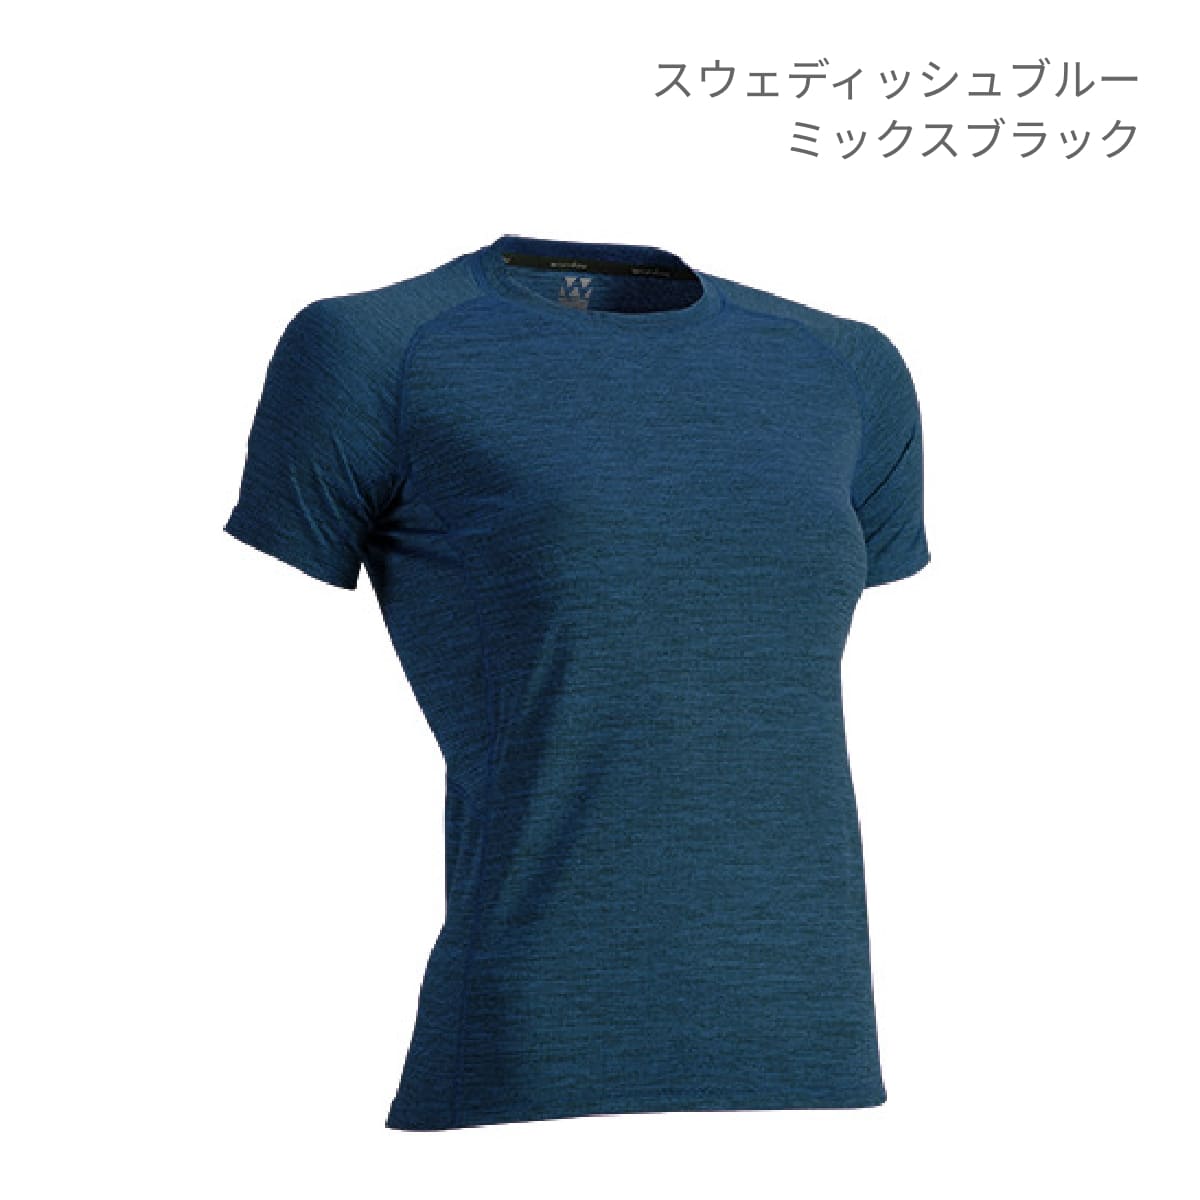 【送料無料】ウィメンズフィットネスTシャツ | ユニフォーム | 1枚 | P720 | チャコールグレーミックスブラック